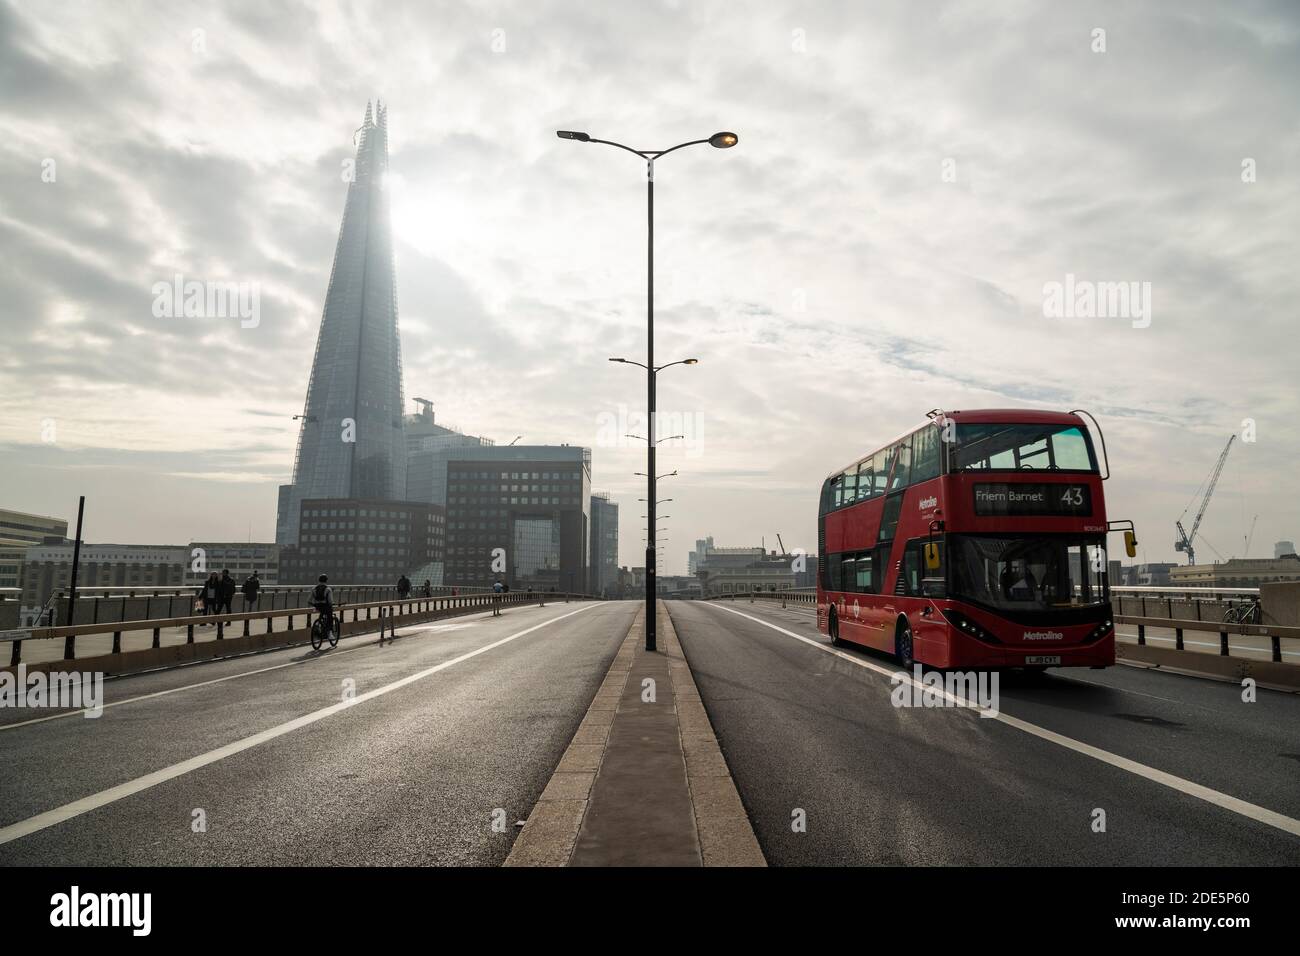 Ruhige, leere und menschenleere Straßen und Straßen in London in Coronavirus Covid-19 Pandemiesperre am Shard an der London Bridge mit rotem London Bus in England, Großbritannien, Europa Stockfoto